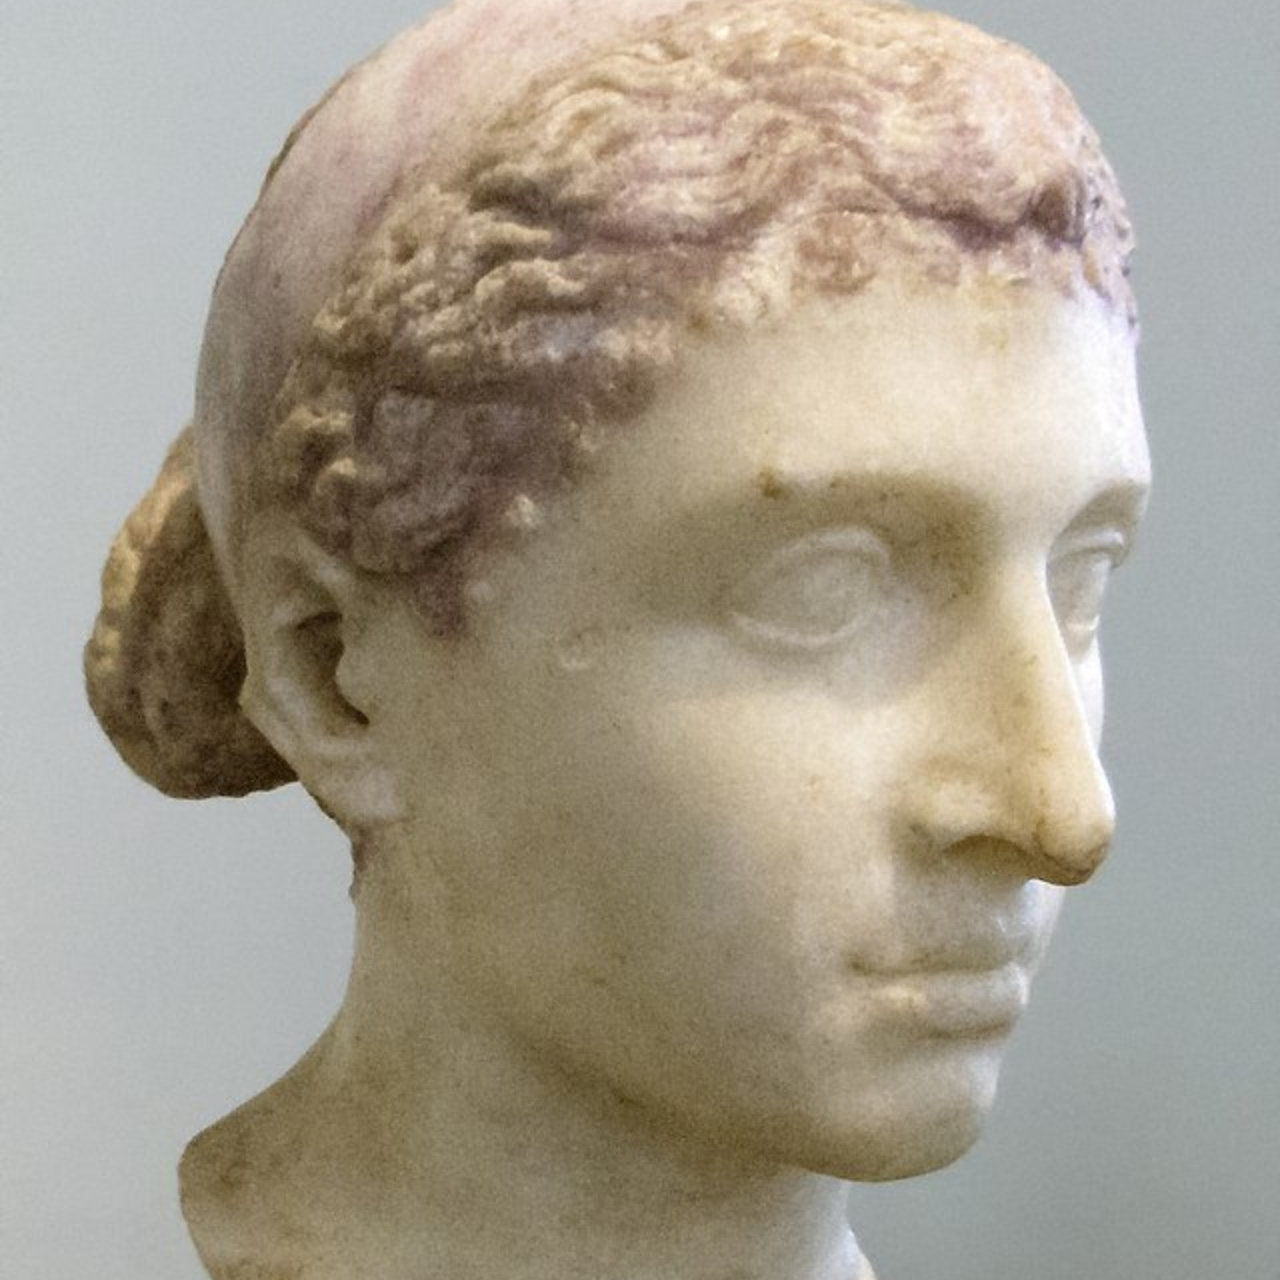 Ptolemeu XV Cesarião foi o último faraó do Egito. Ele era filho de  Cleópatra e Júlio César, mas este nunca reconheceu publi- camente sua  paternidade. - iFunny Brazil